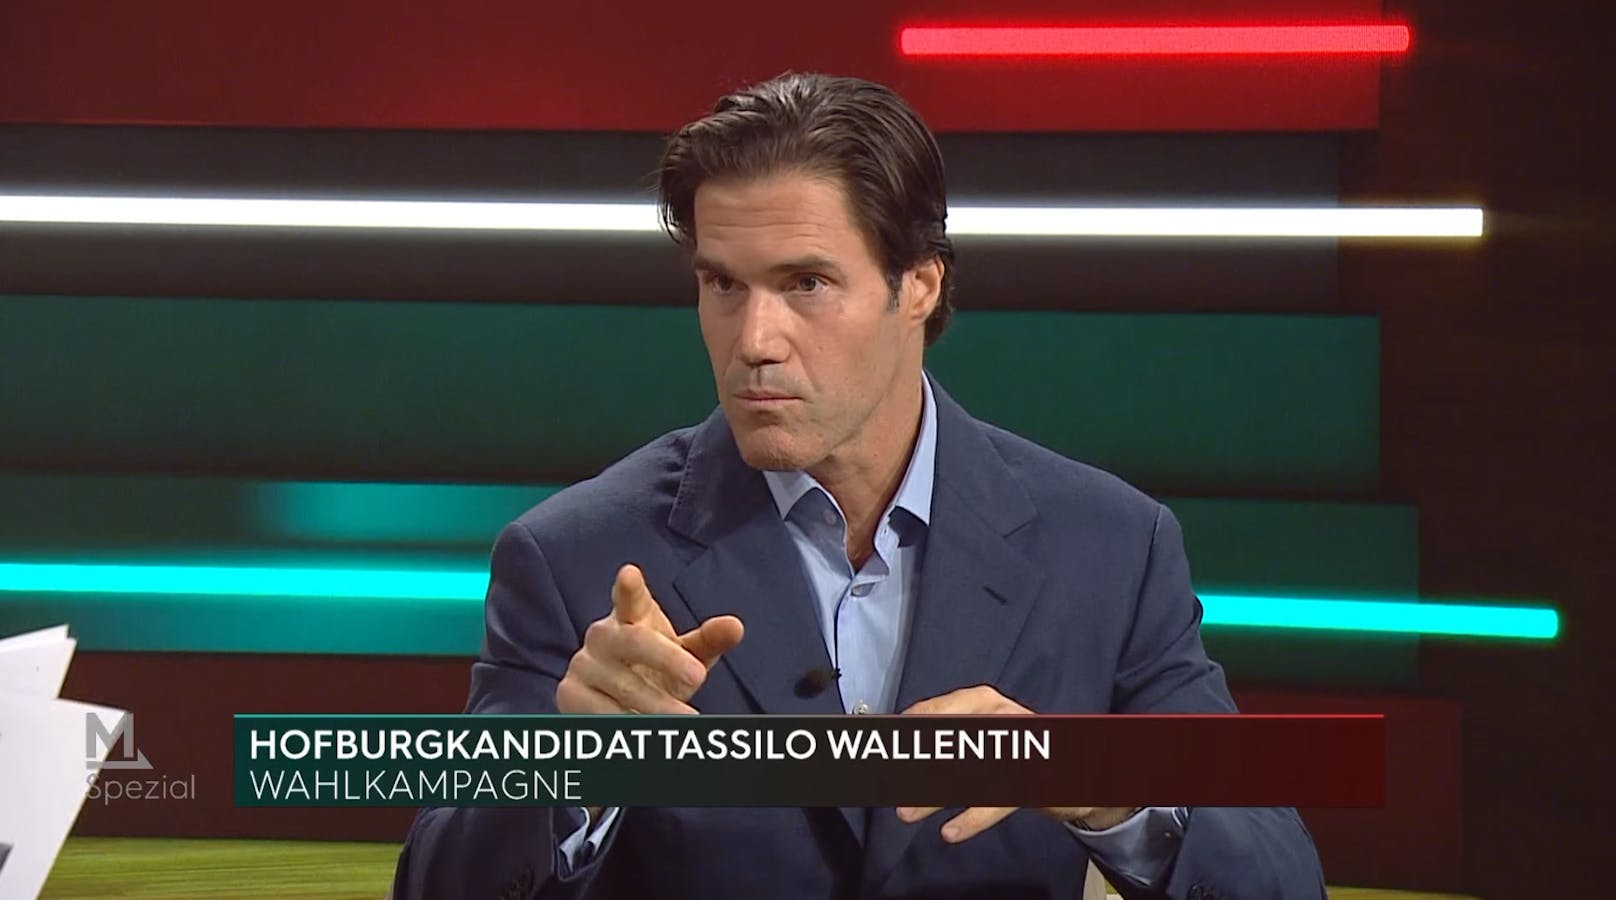 "Unwürdig" – Wallentin ringt in TV-Interview um Fassung